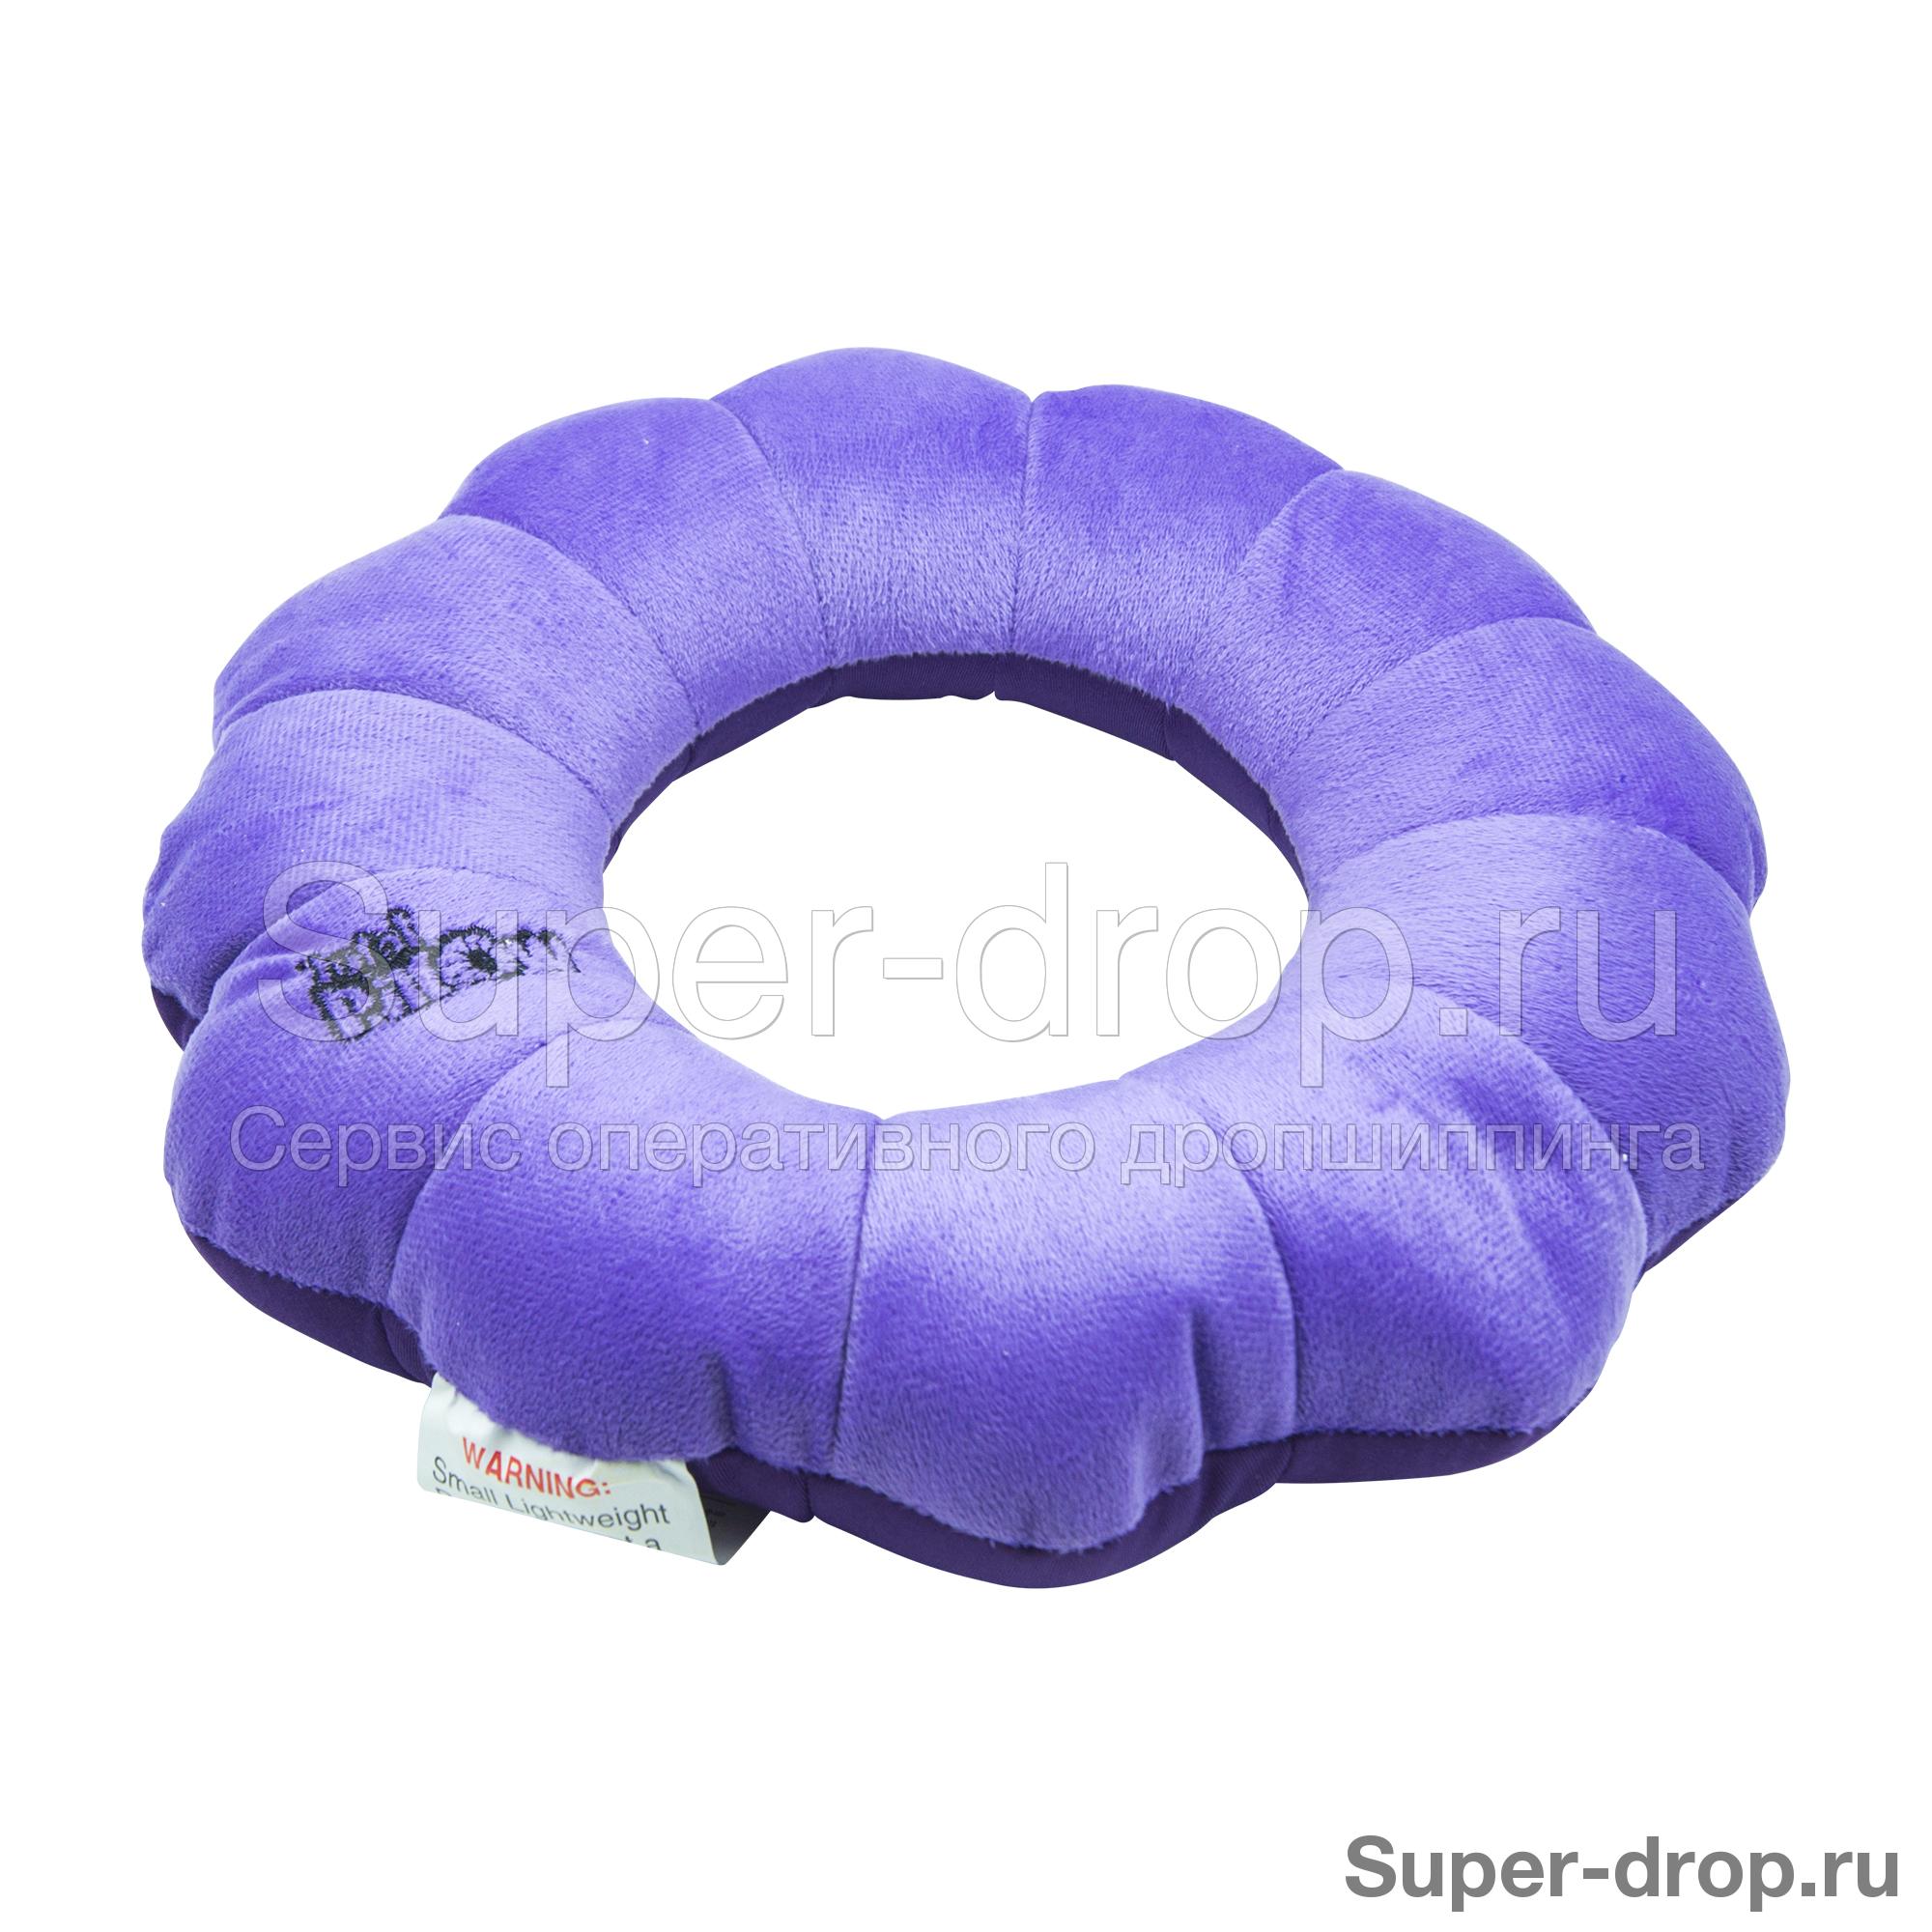 Подушка-трансформер Total Pillow